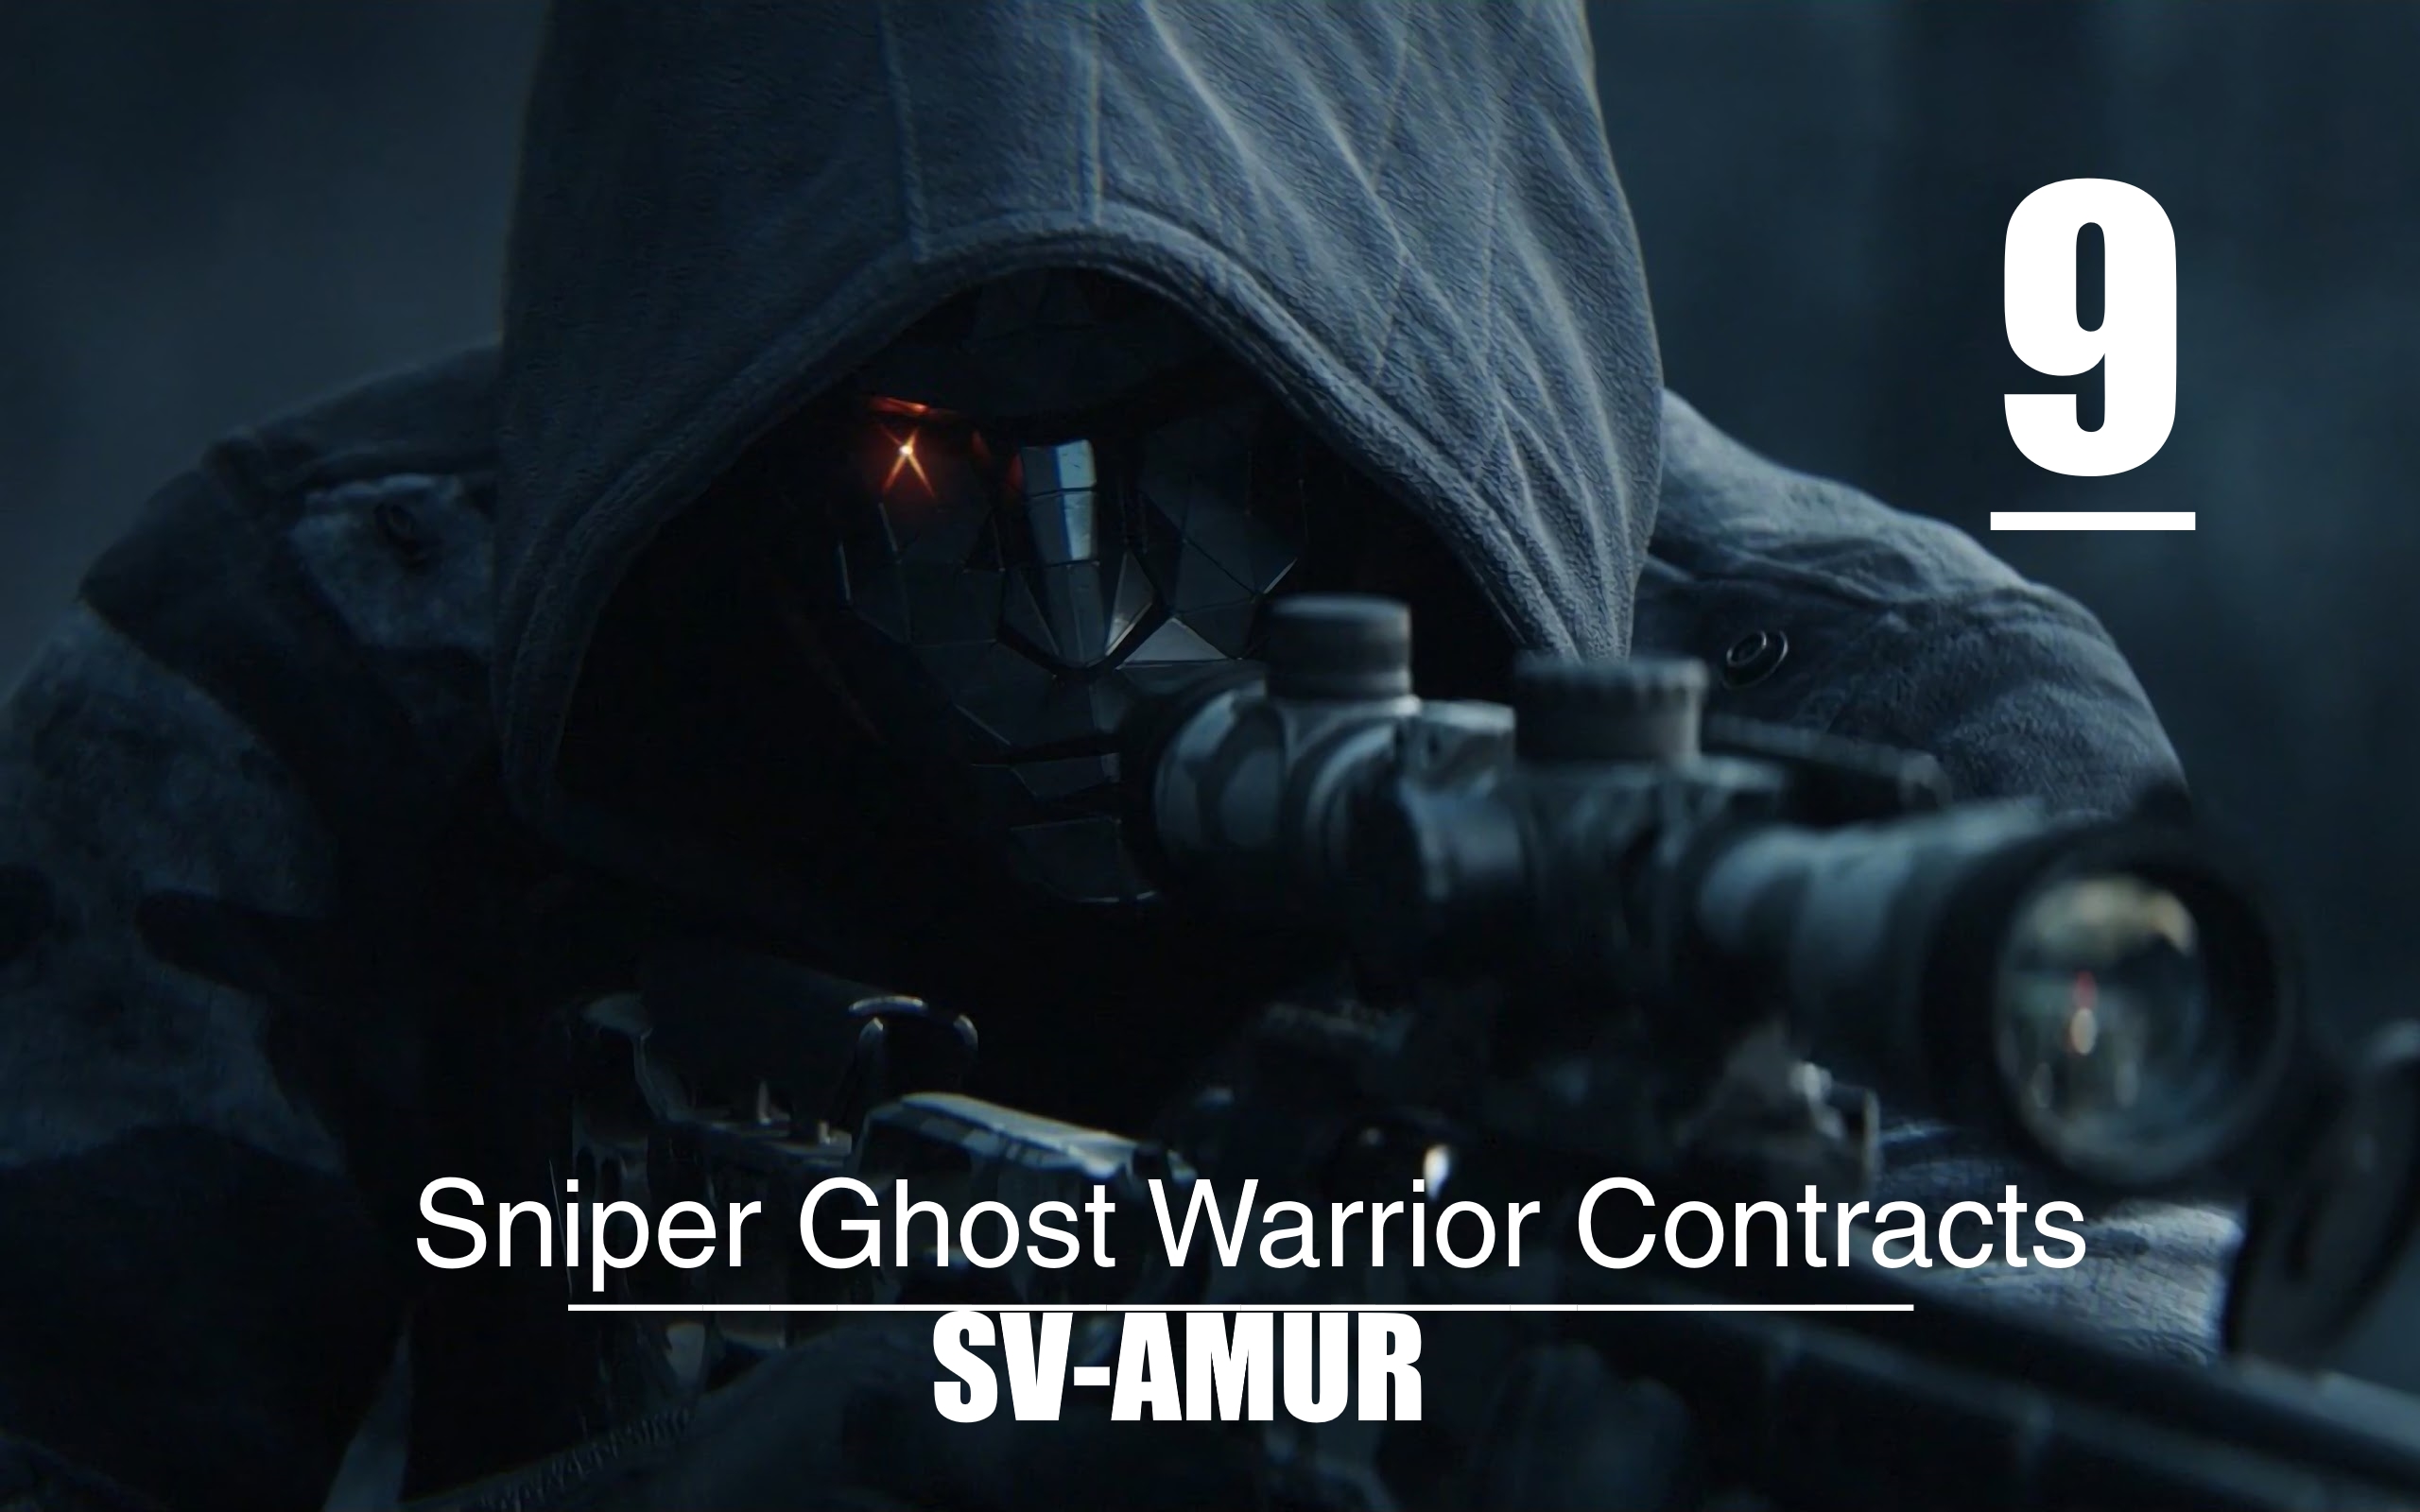 ▄︻デ══━一?[Sniper Ghost Warrior Contracts] :Билет в Один Конец Для Сехова и Ольги Курчатовой #9